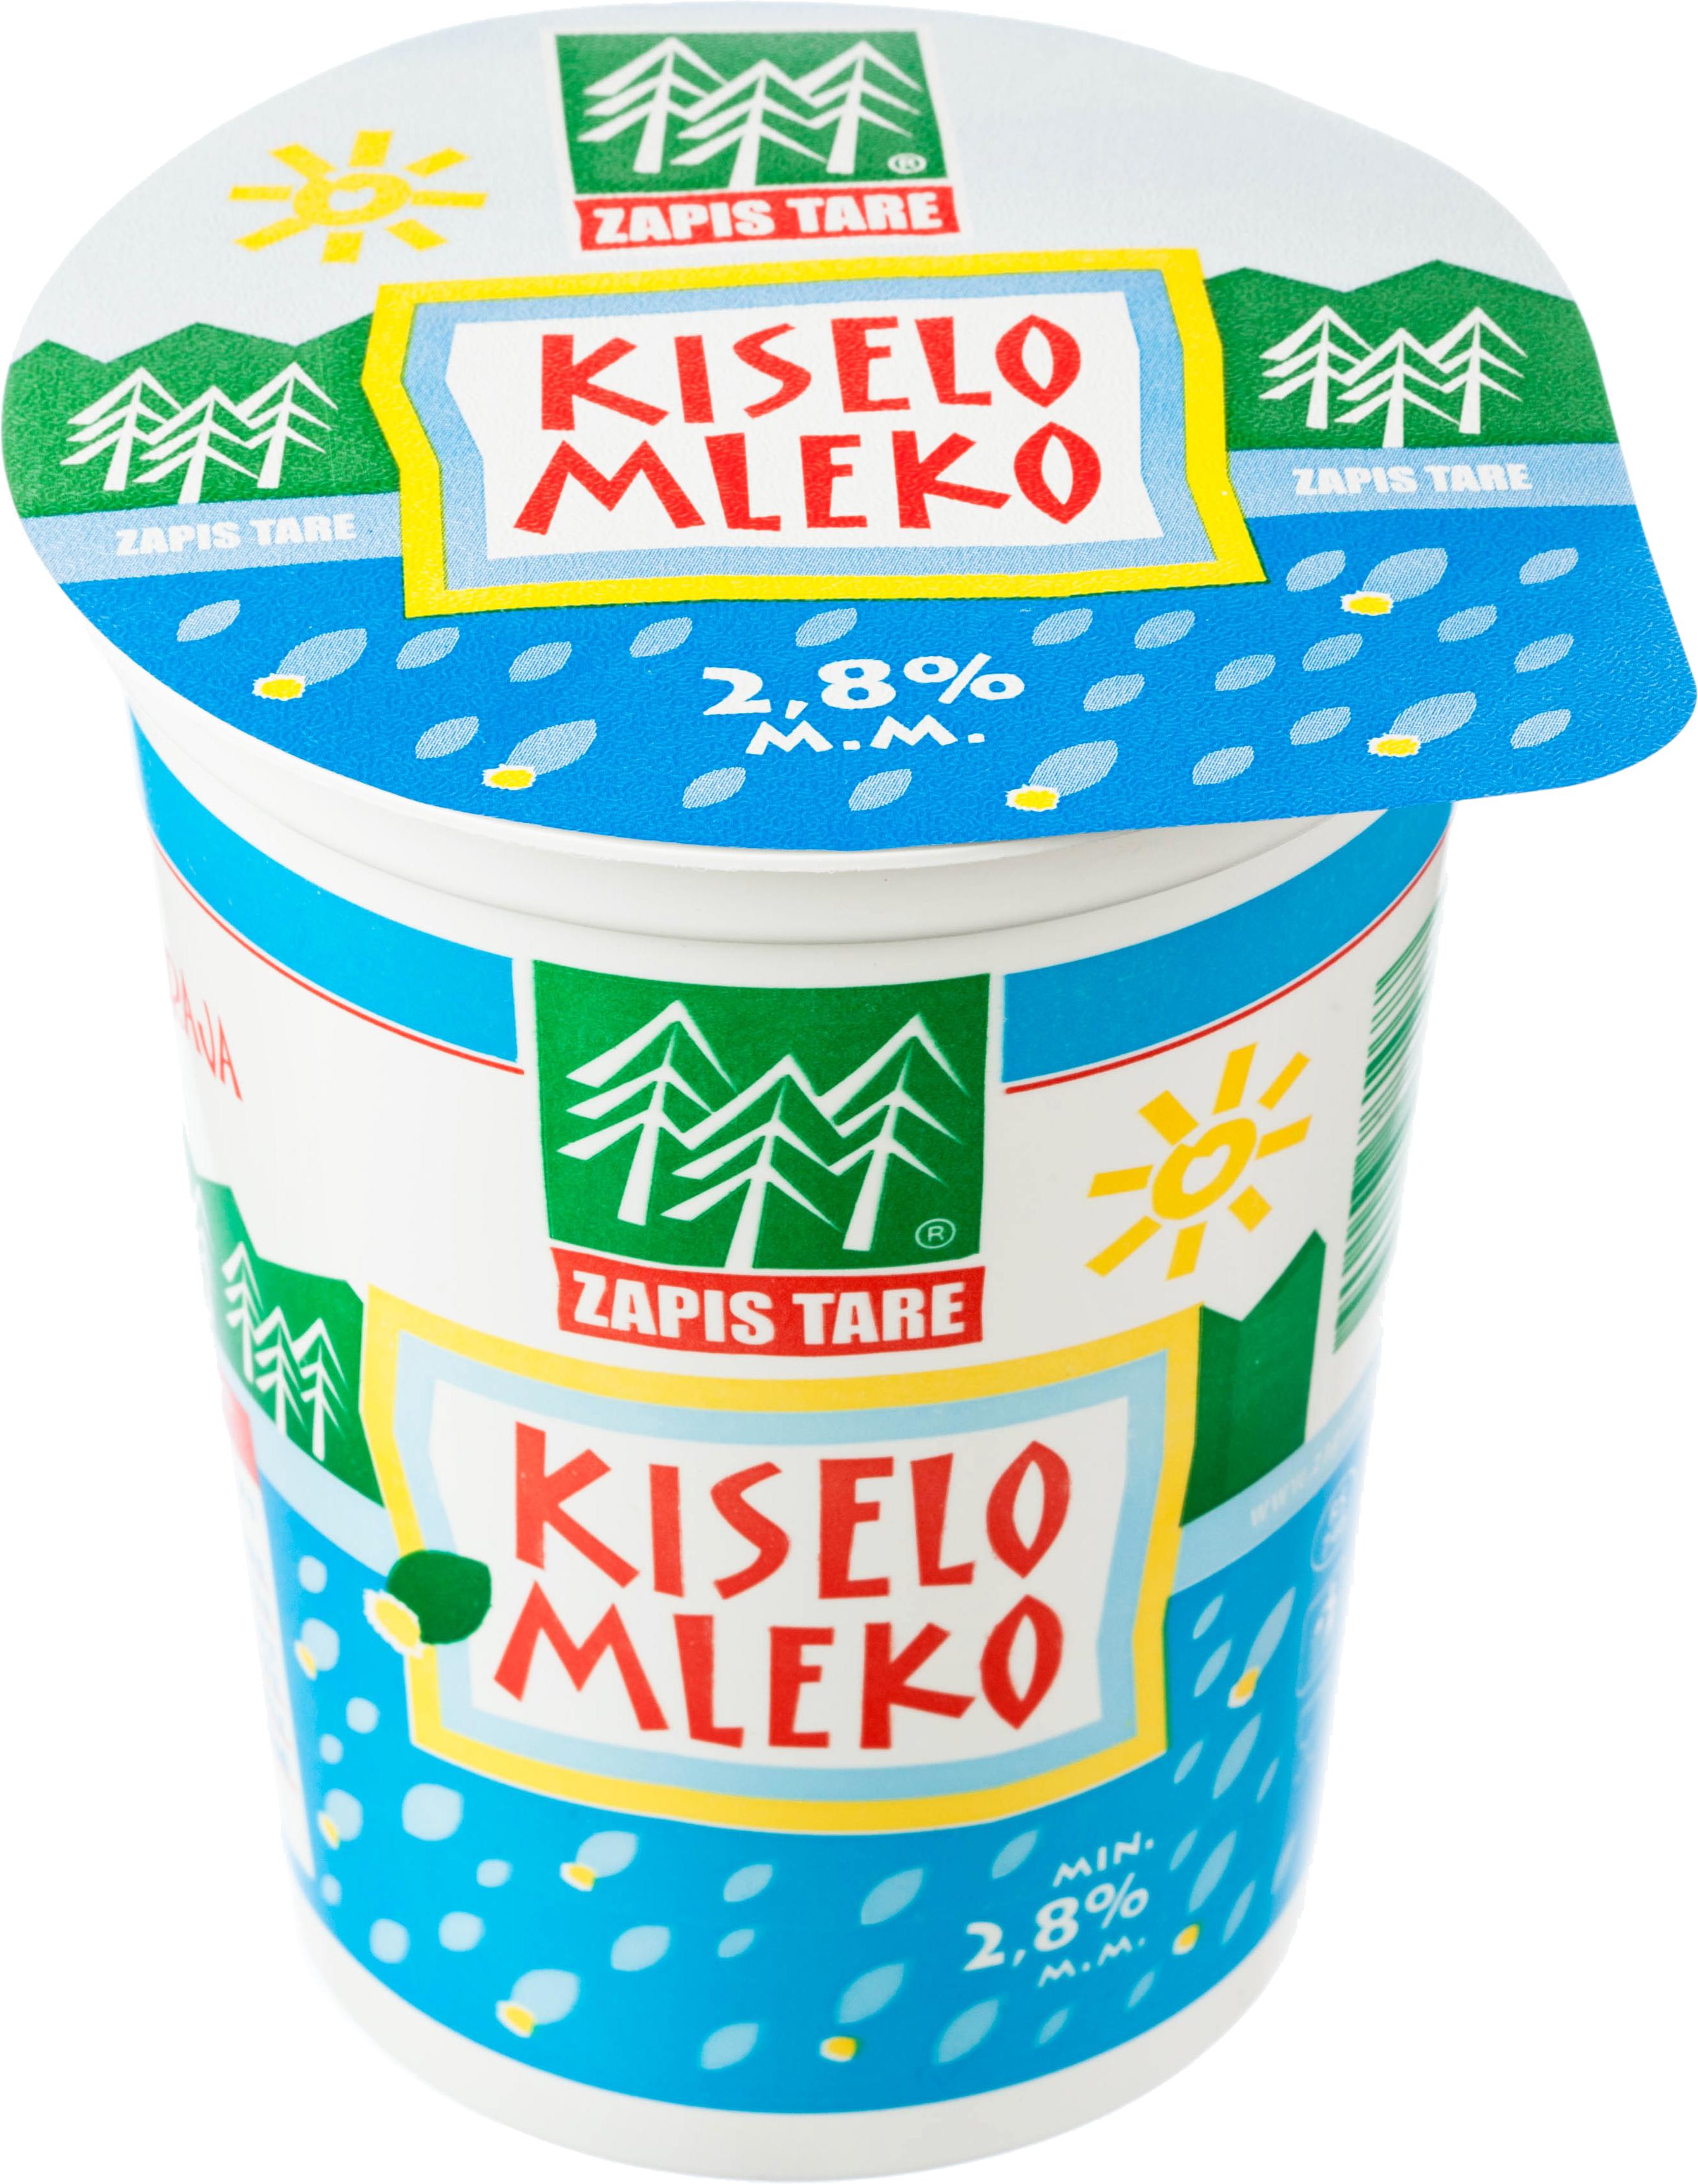 Slika za Kiselo mleko 2,8%mm Zapis Tare 380g